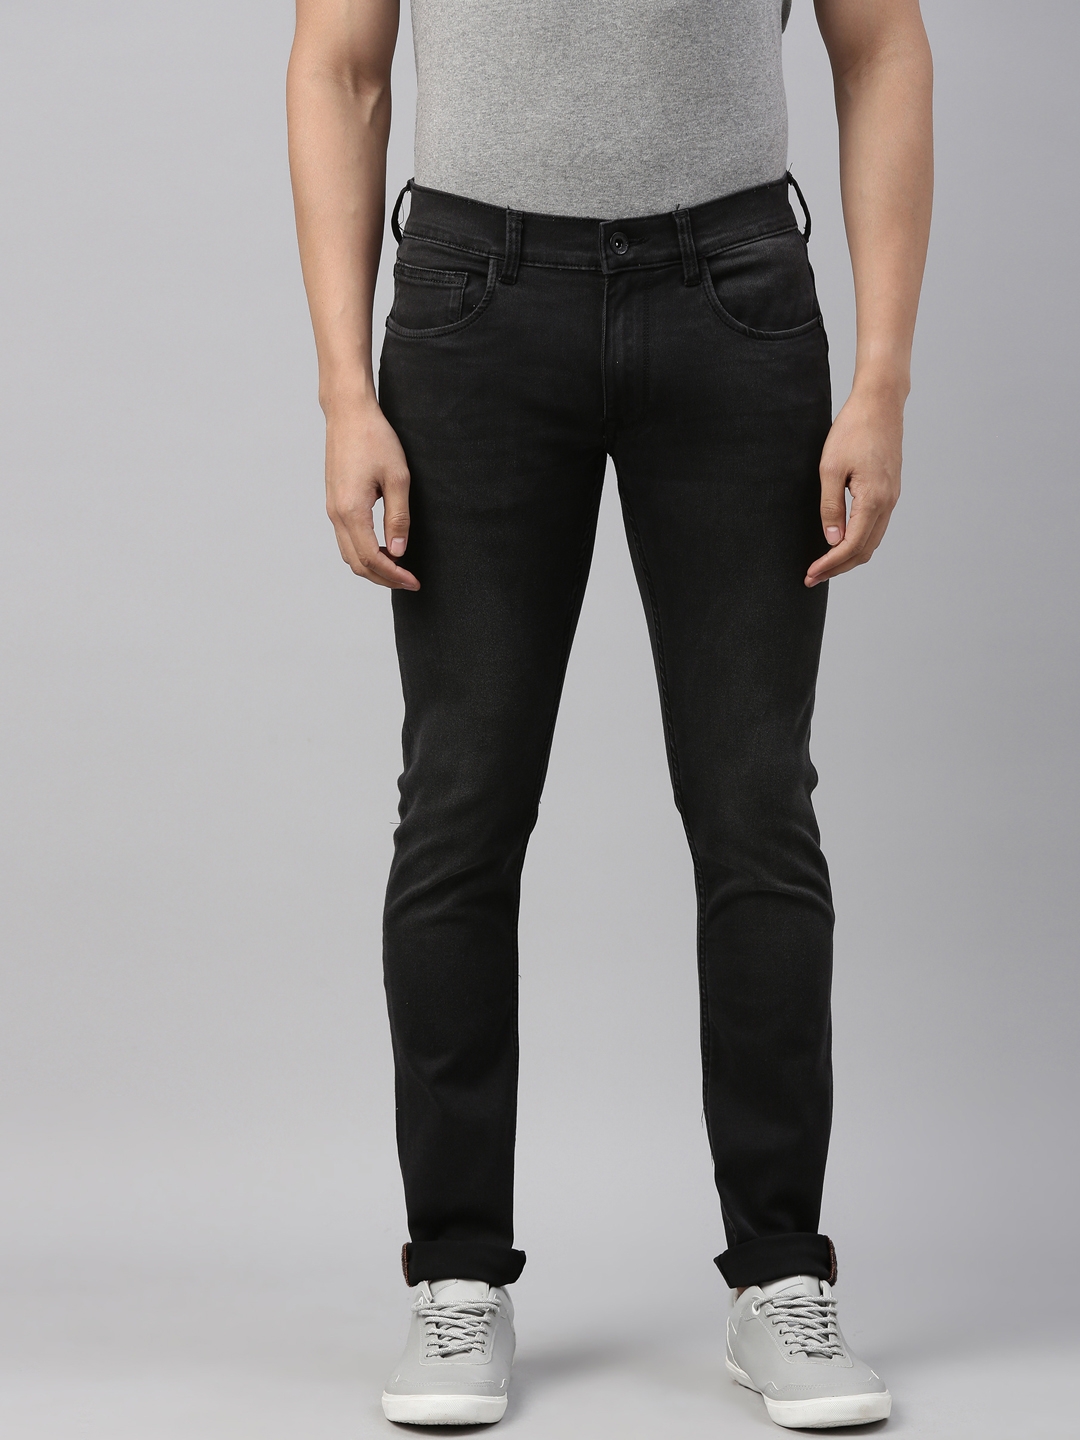 American Bull | American Bull Mens Solid Full length Denim Jeans